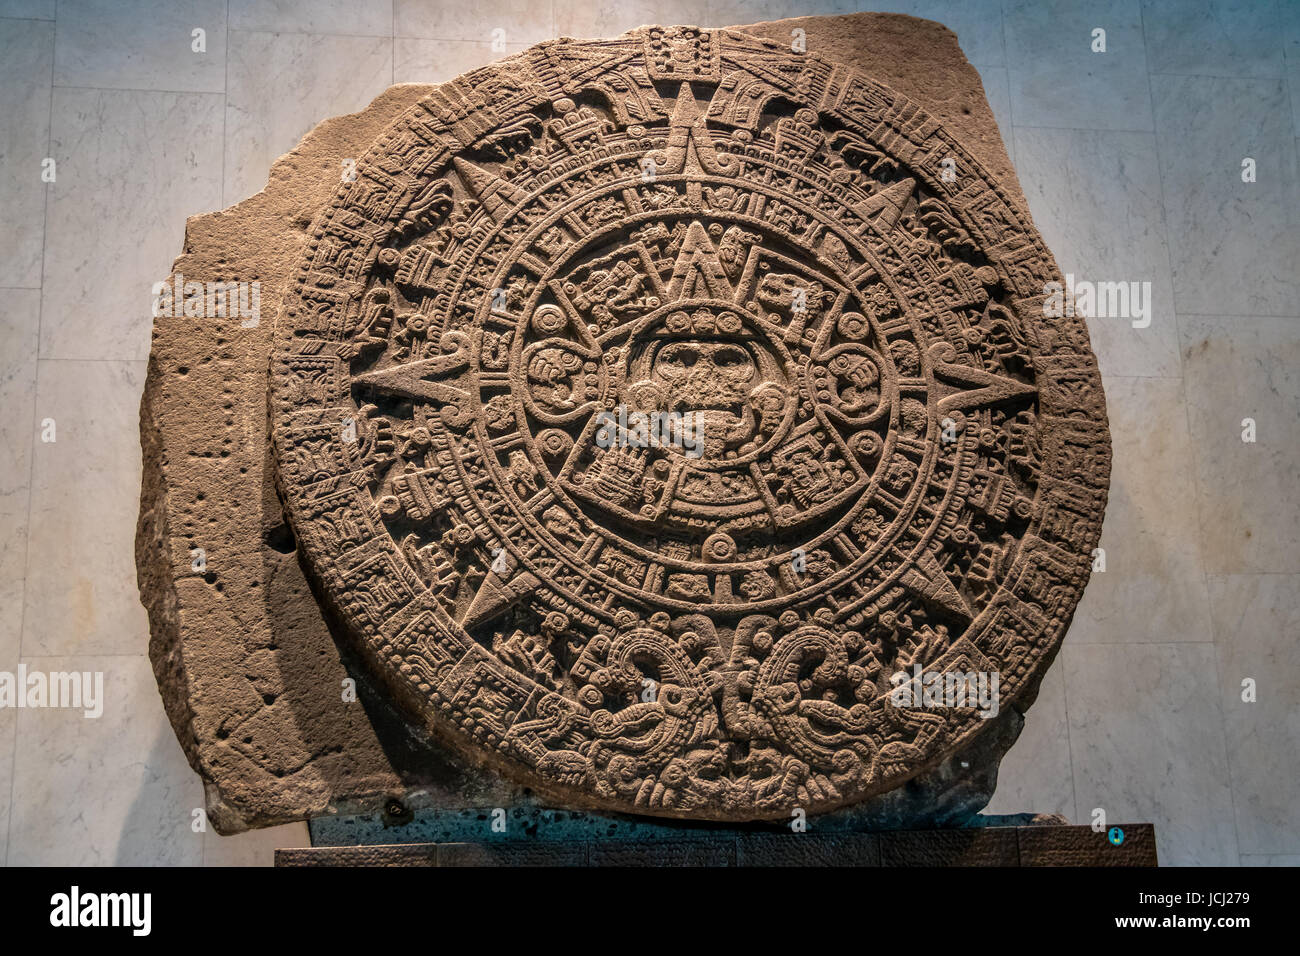 L'Aztec Sunstone presso il Museo Nazionale di Antropologia (Museo Nacional de Antropologia, MNA) - Città del Messico, Messico Foto Stock